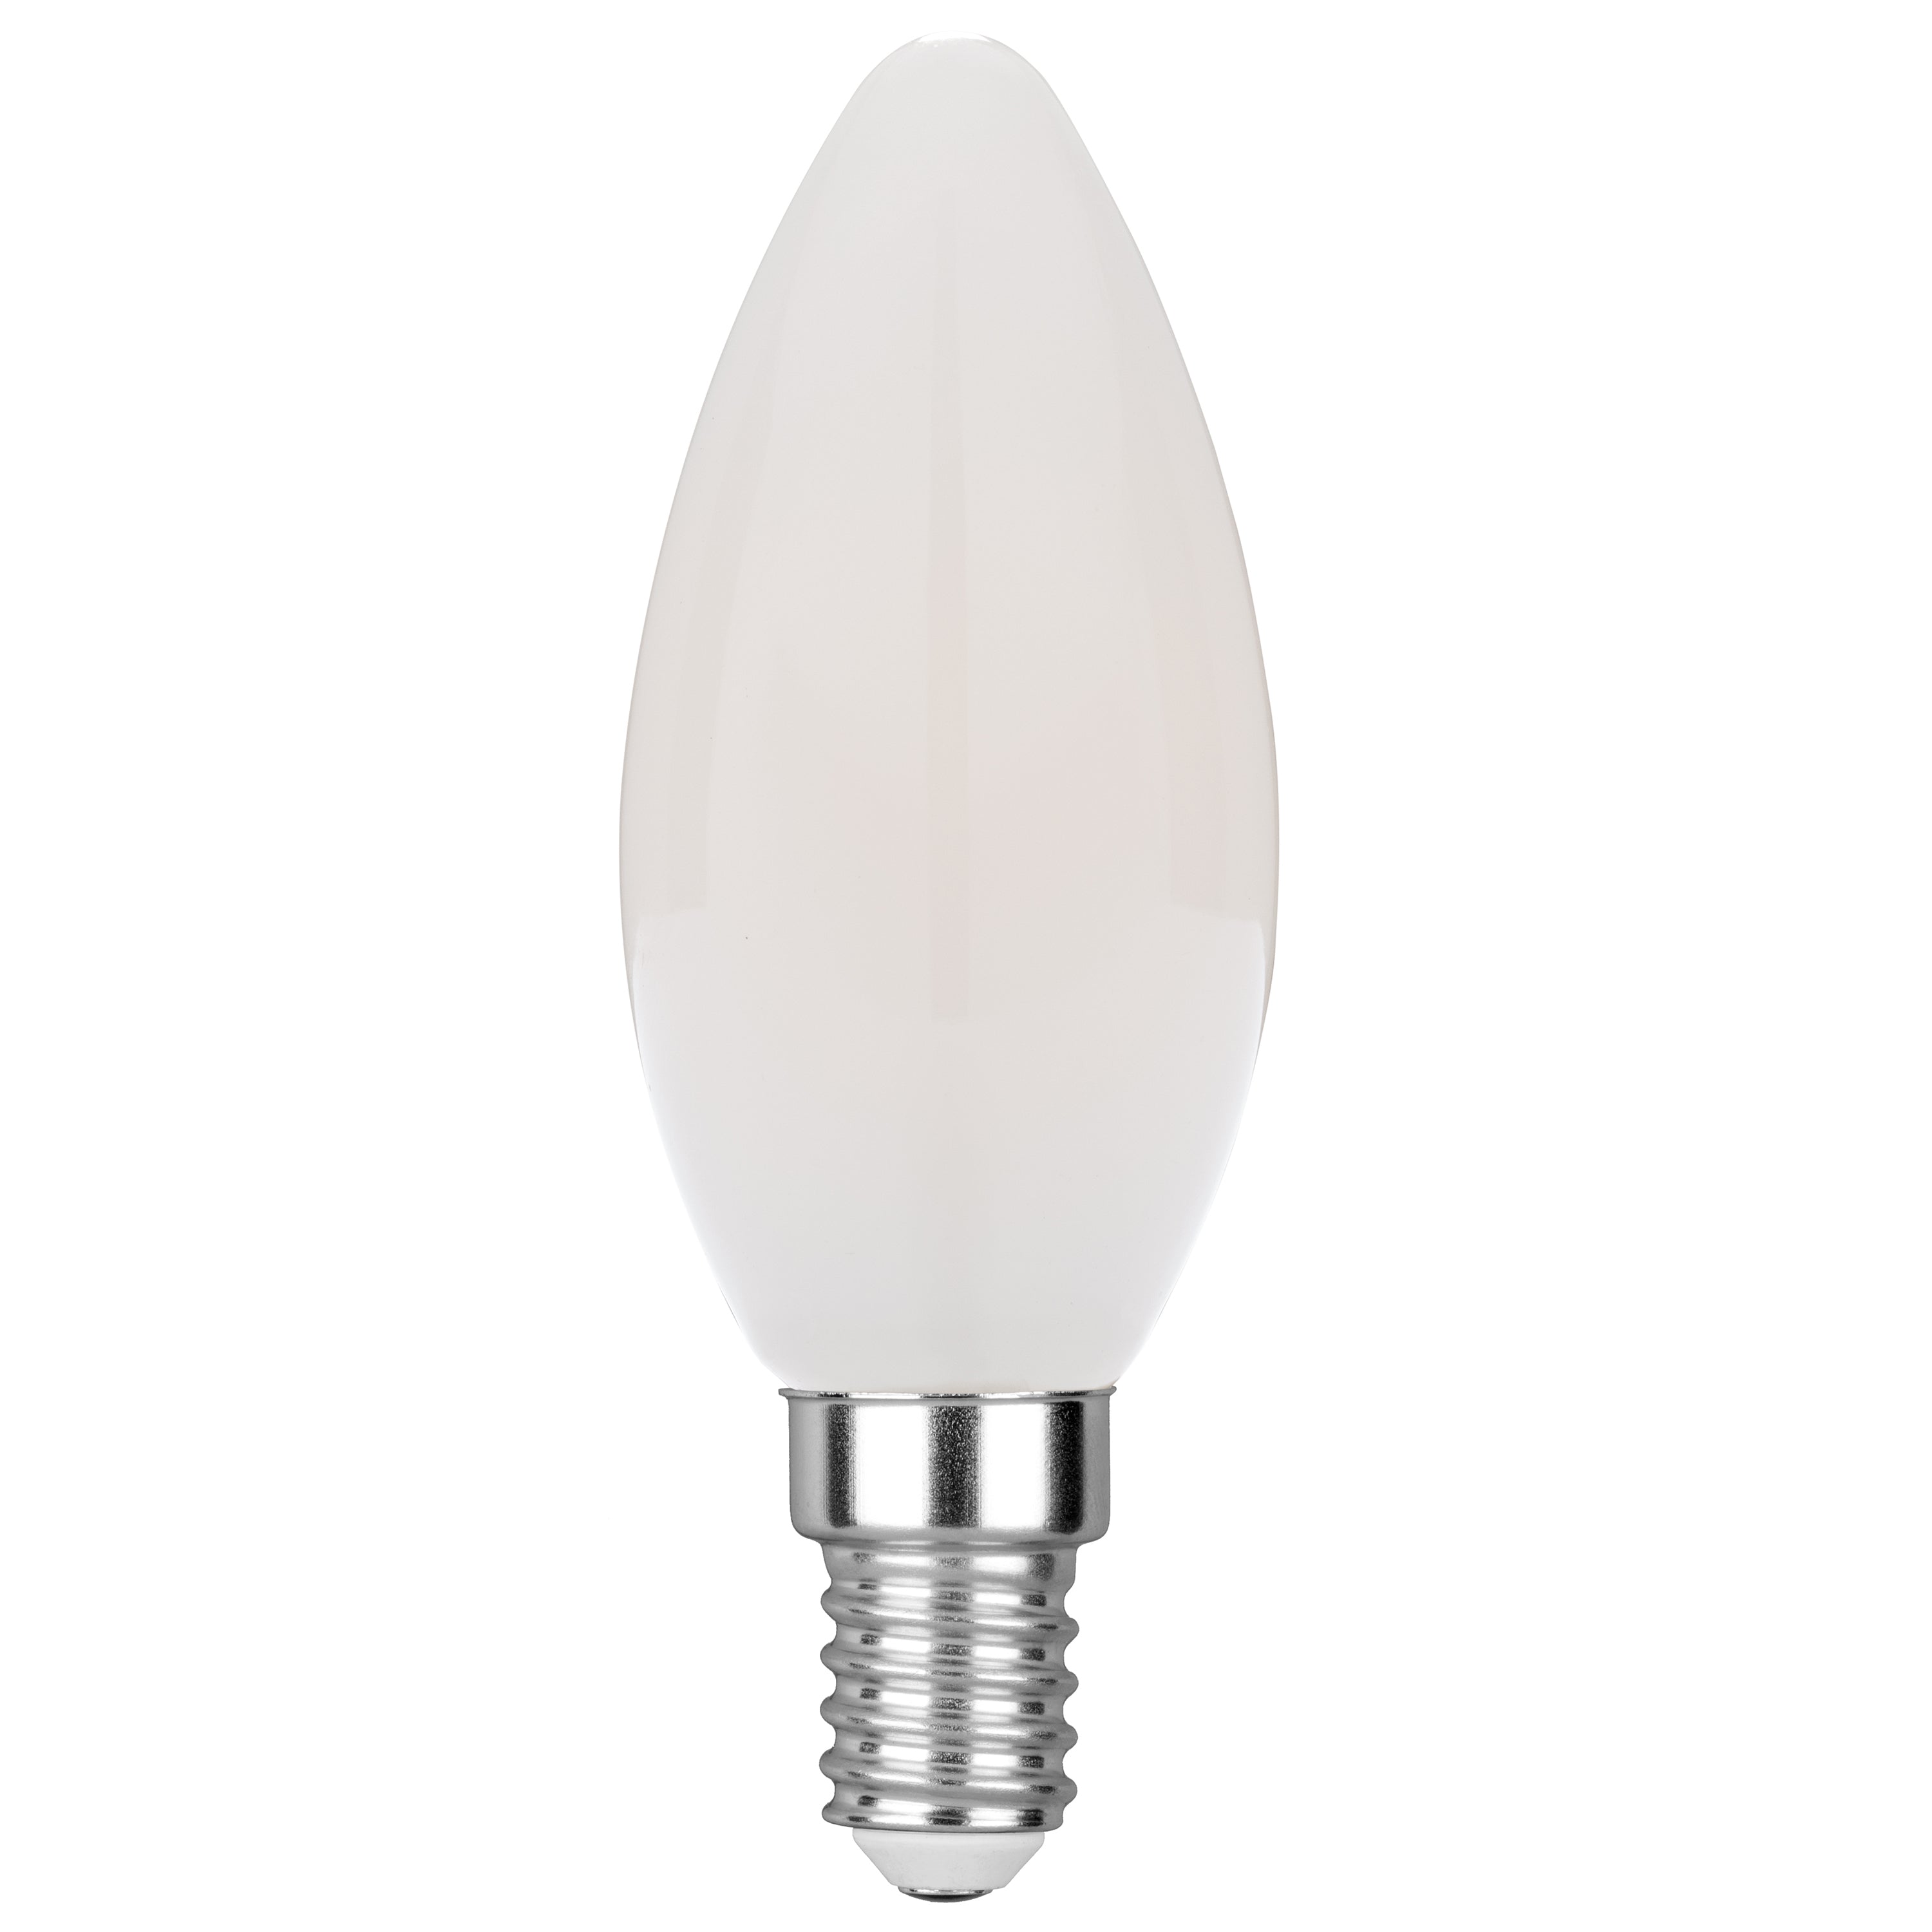 Lampadina led LUXA filamento candela bianco E14 4W 400L 35mm